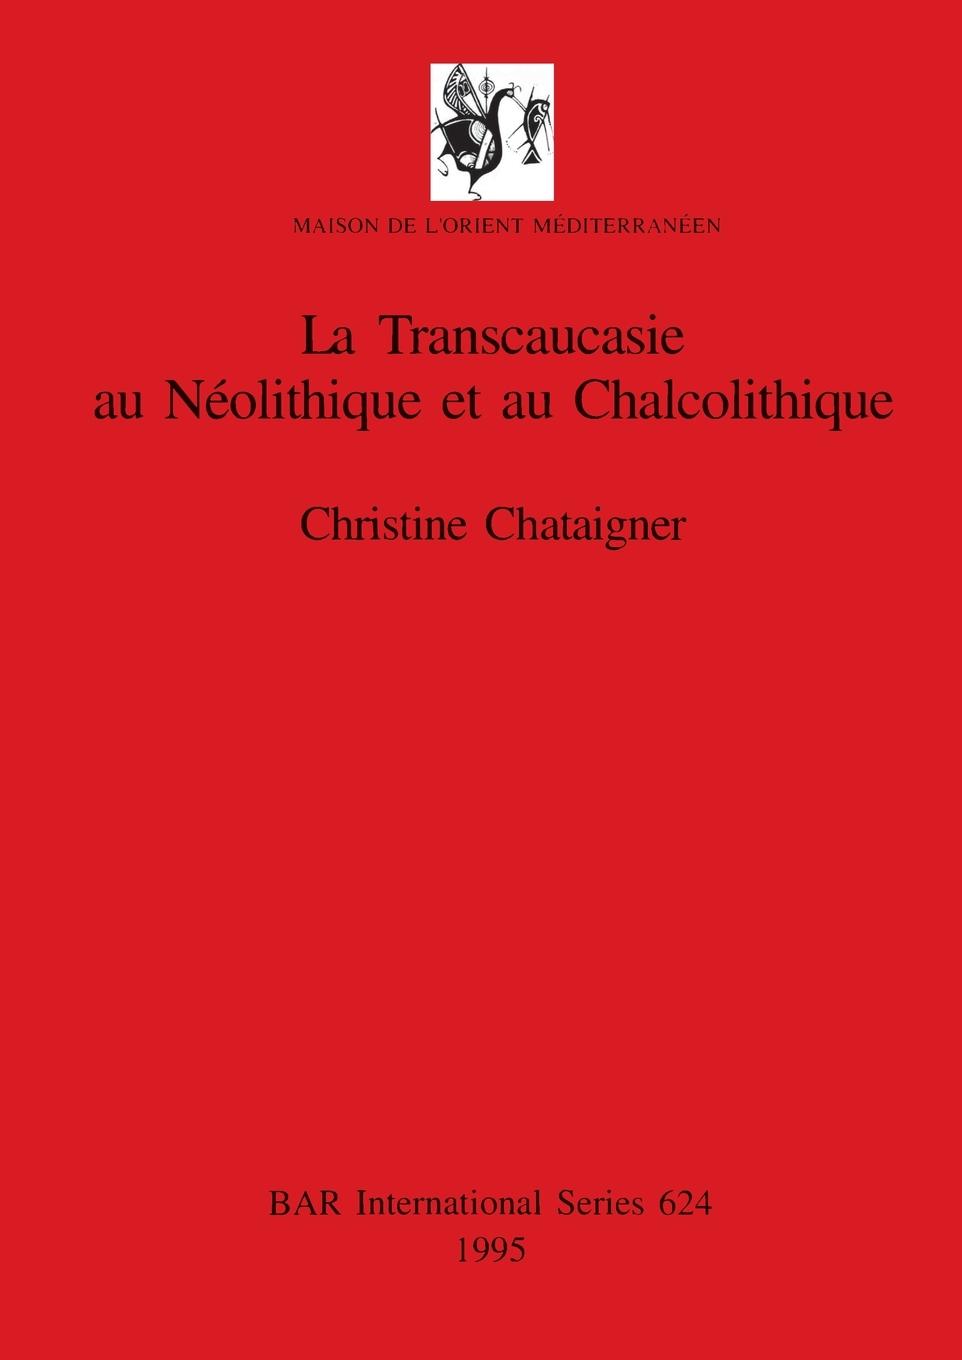 Carte Transcaucasie au Neolithique et au Chalcolithique 